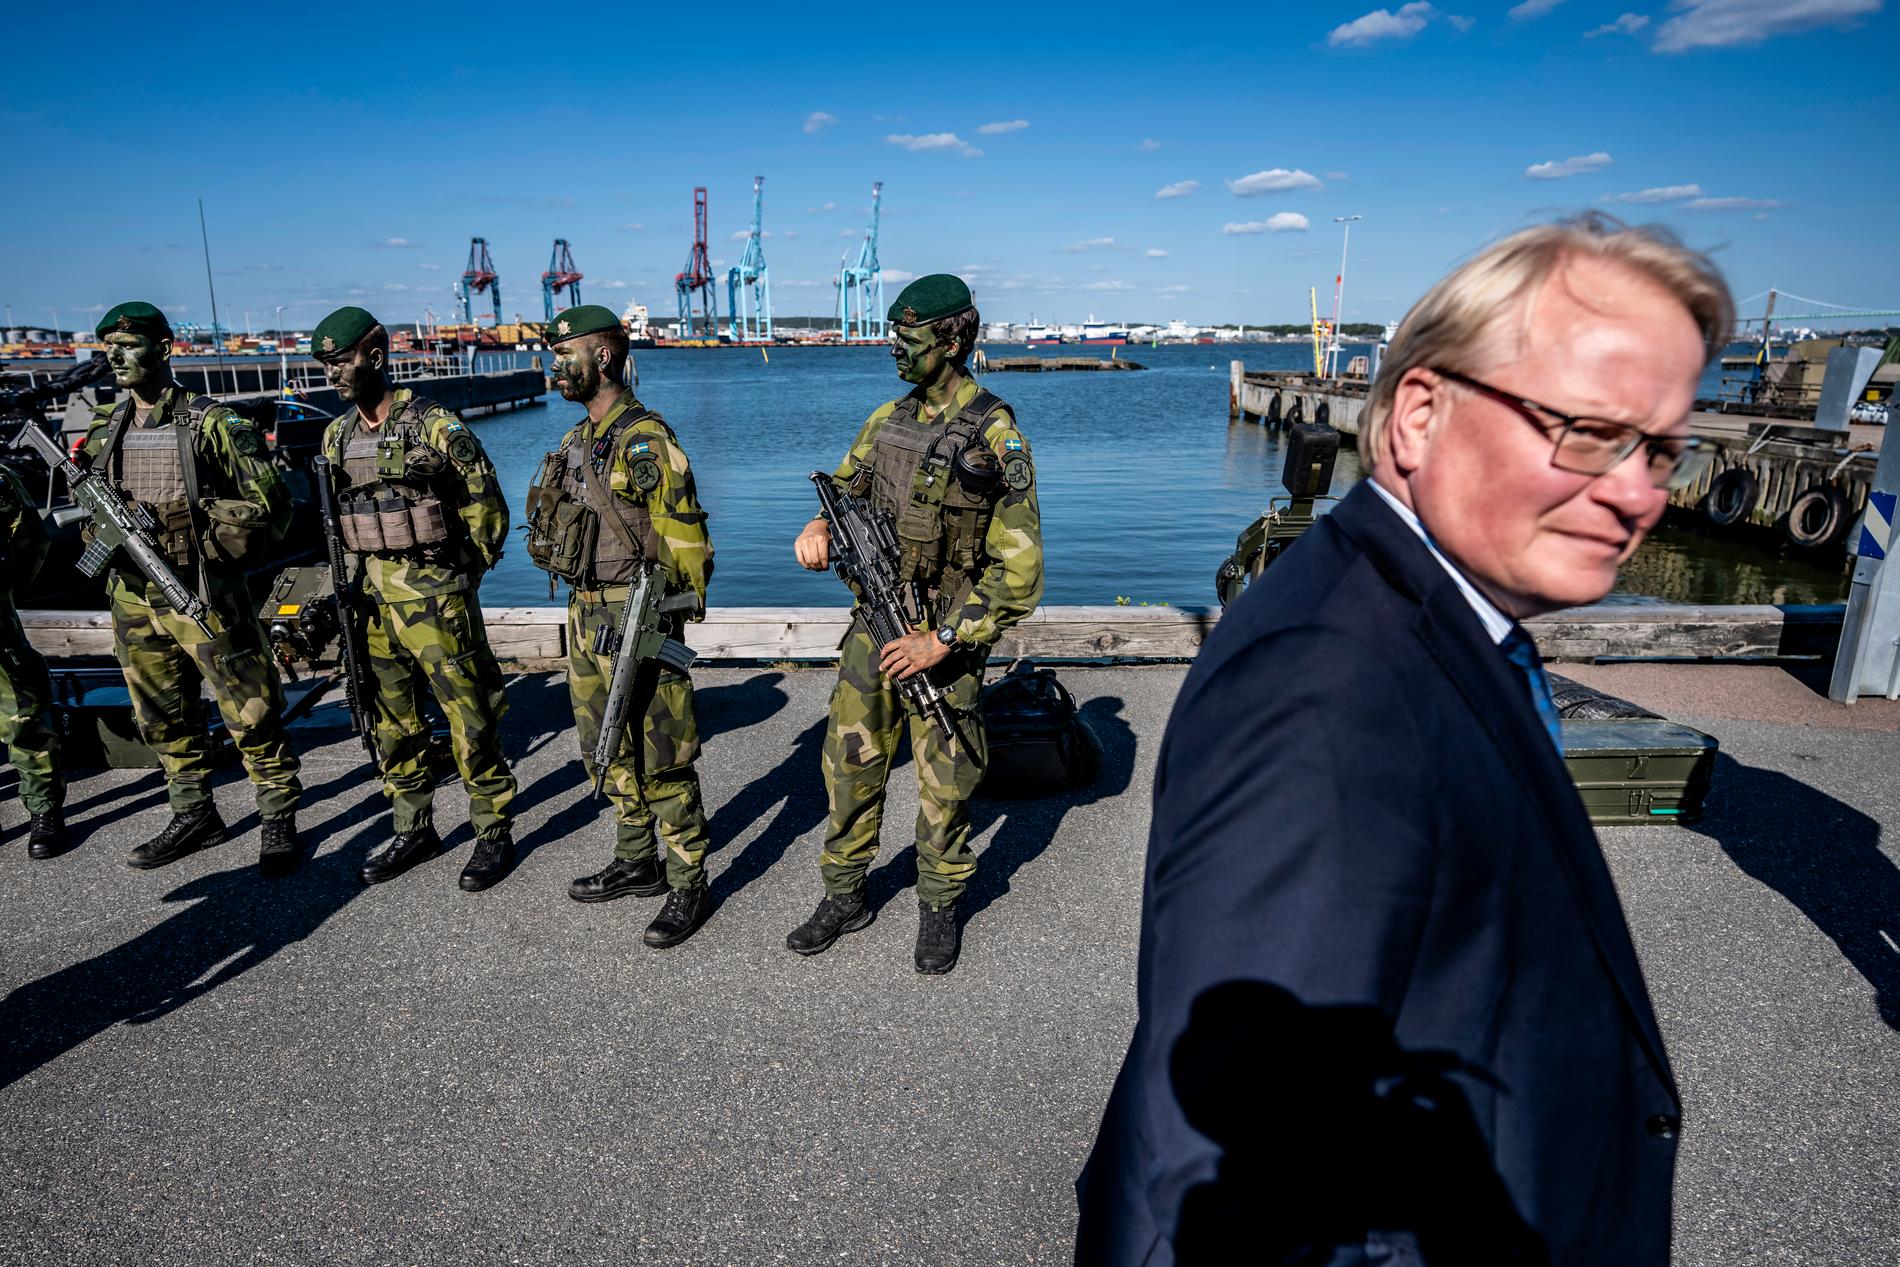 Hamnen i Göteborg ses som avgörande när det gäller att ta emot hjälp från vänligt sinnade nationer i händelse av kris eller krig.